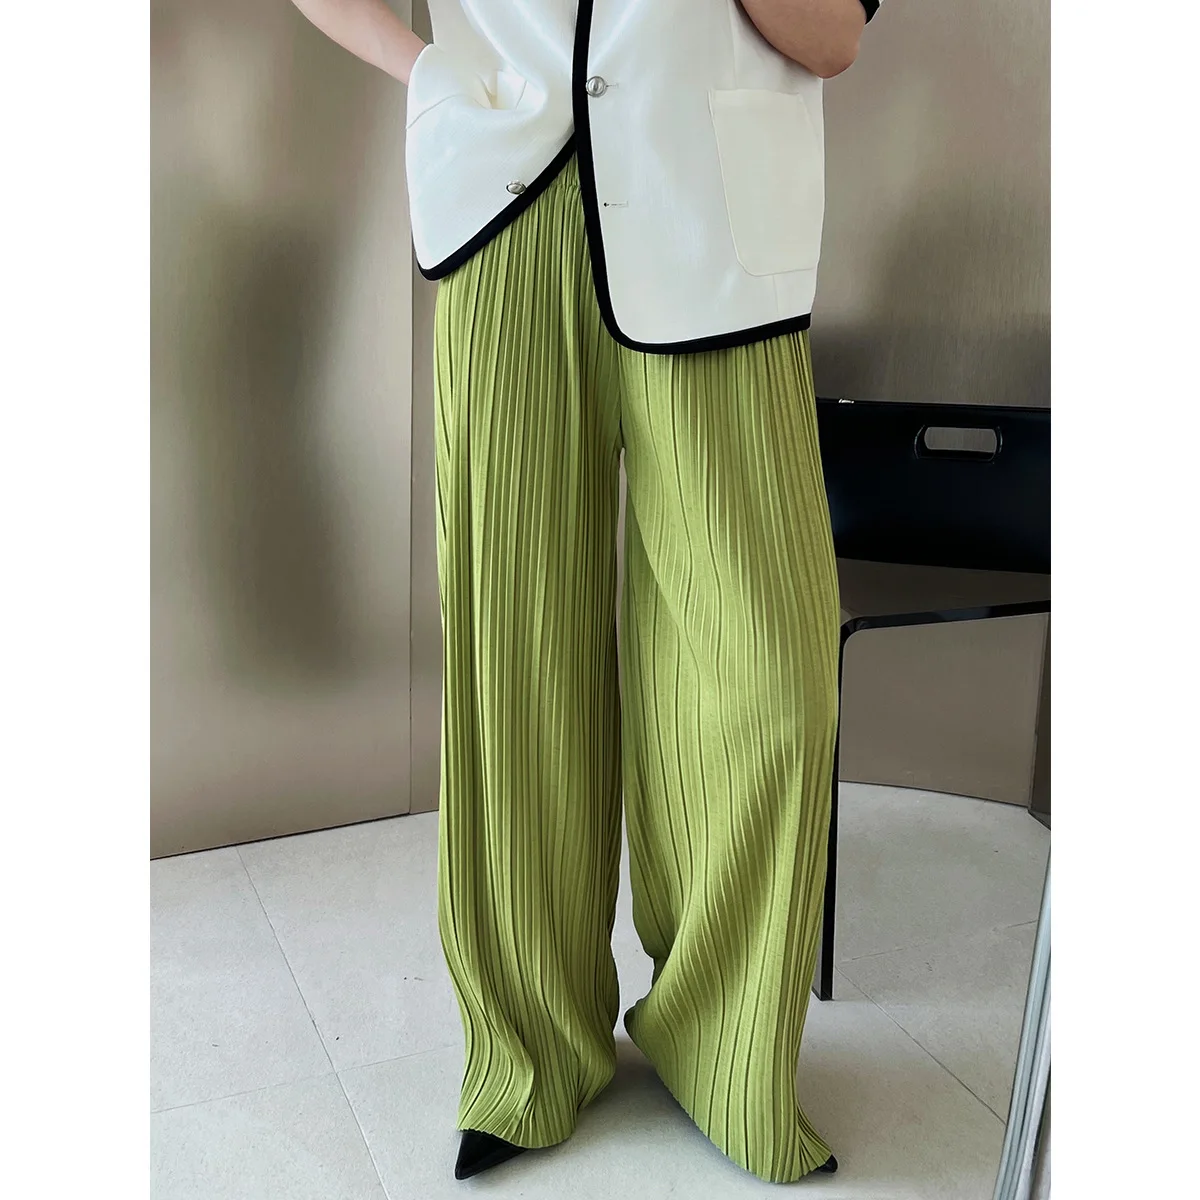 Katı Pilili Geniş Bacak Pantolon Yeşil kadın Rahat Bayanlar Pilili pantolon Gevşek Yüksek Bel Streetwear İnce Pantolon Kadın Yeni